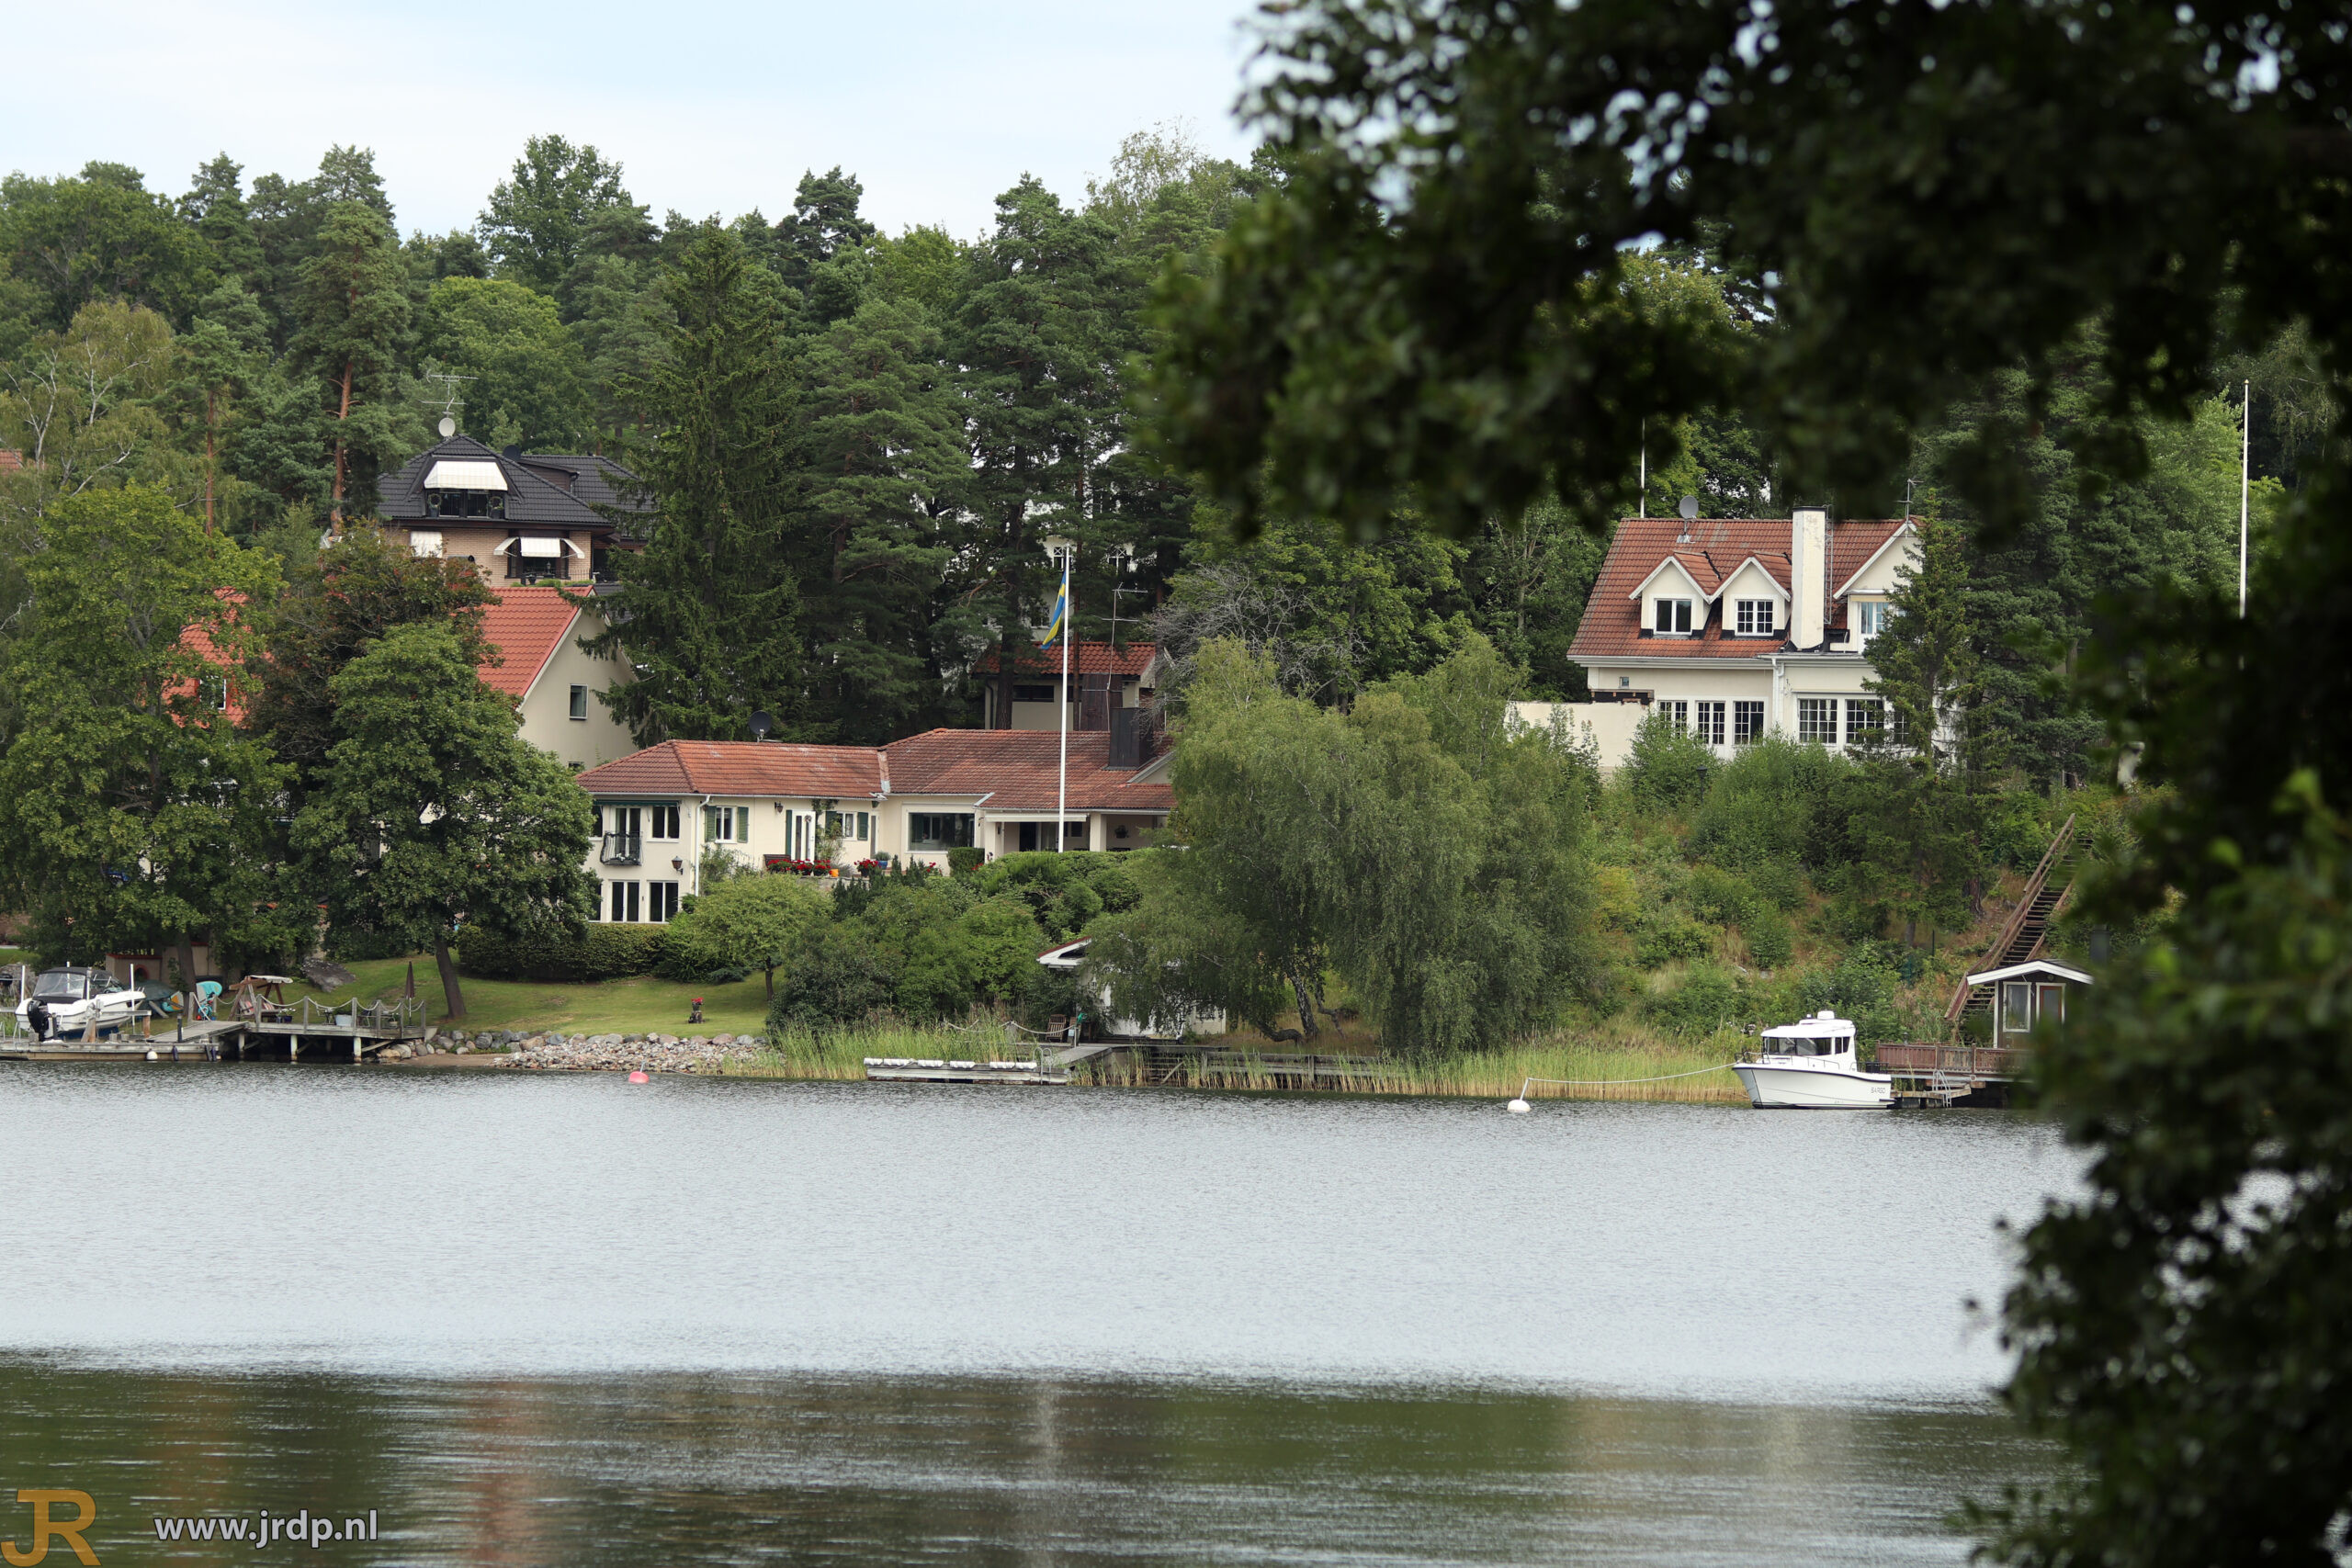 House at the lake